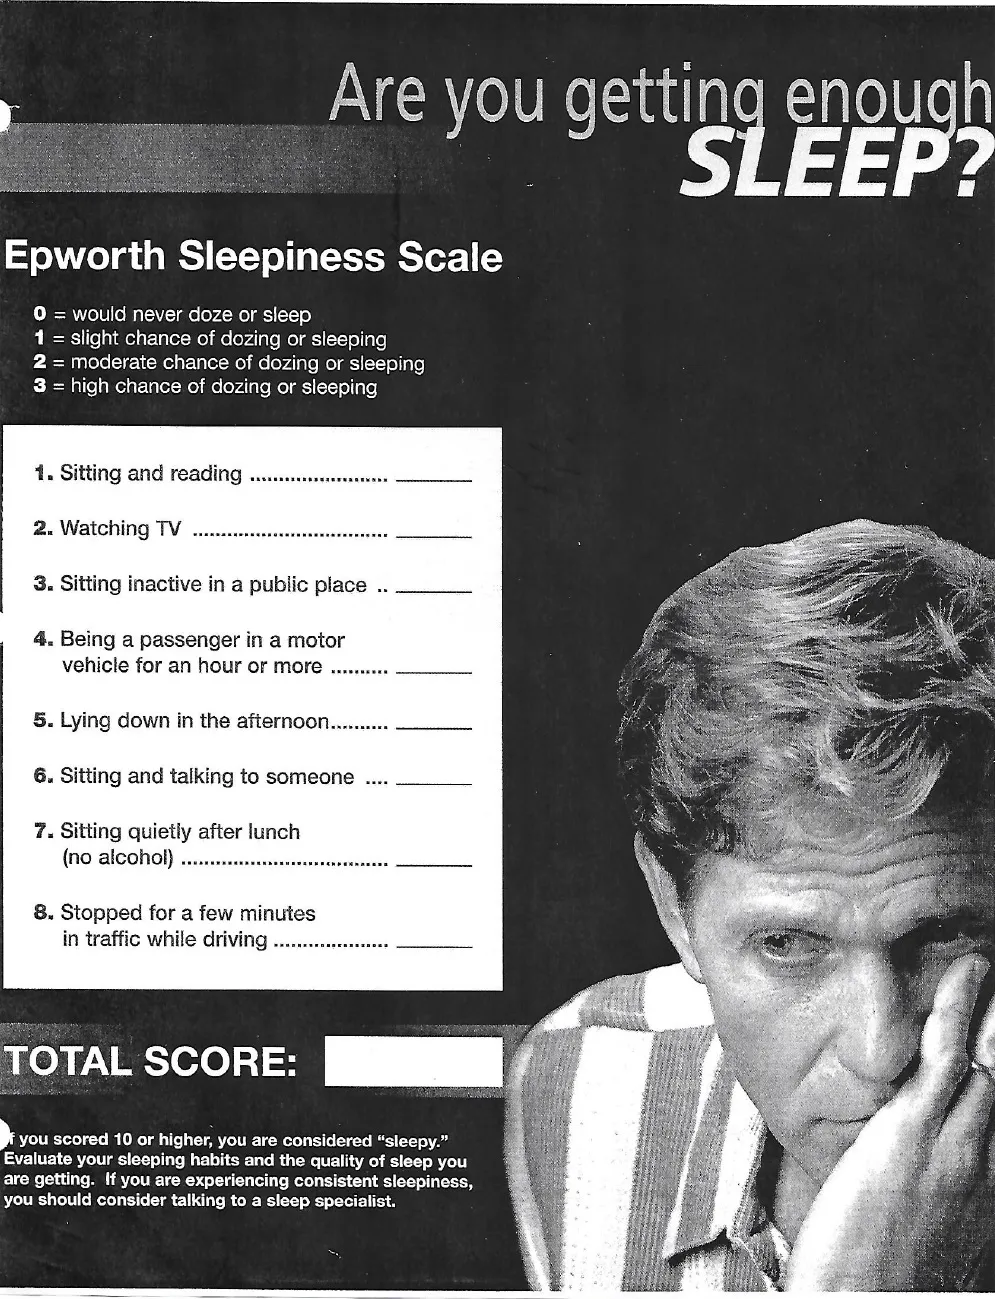 Epworth sleepiness scale